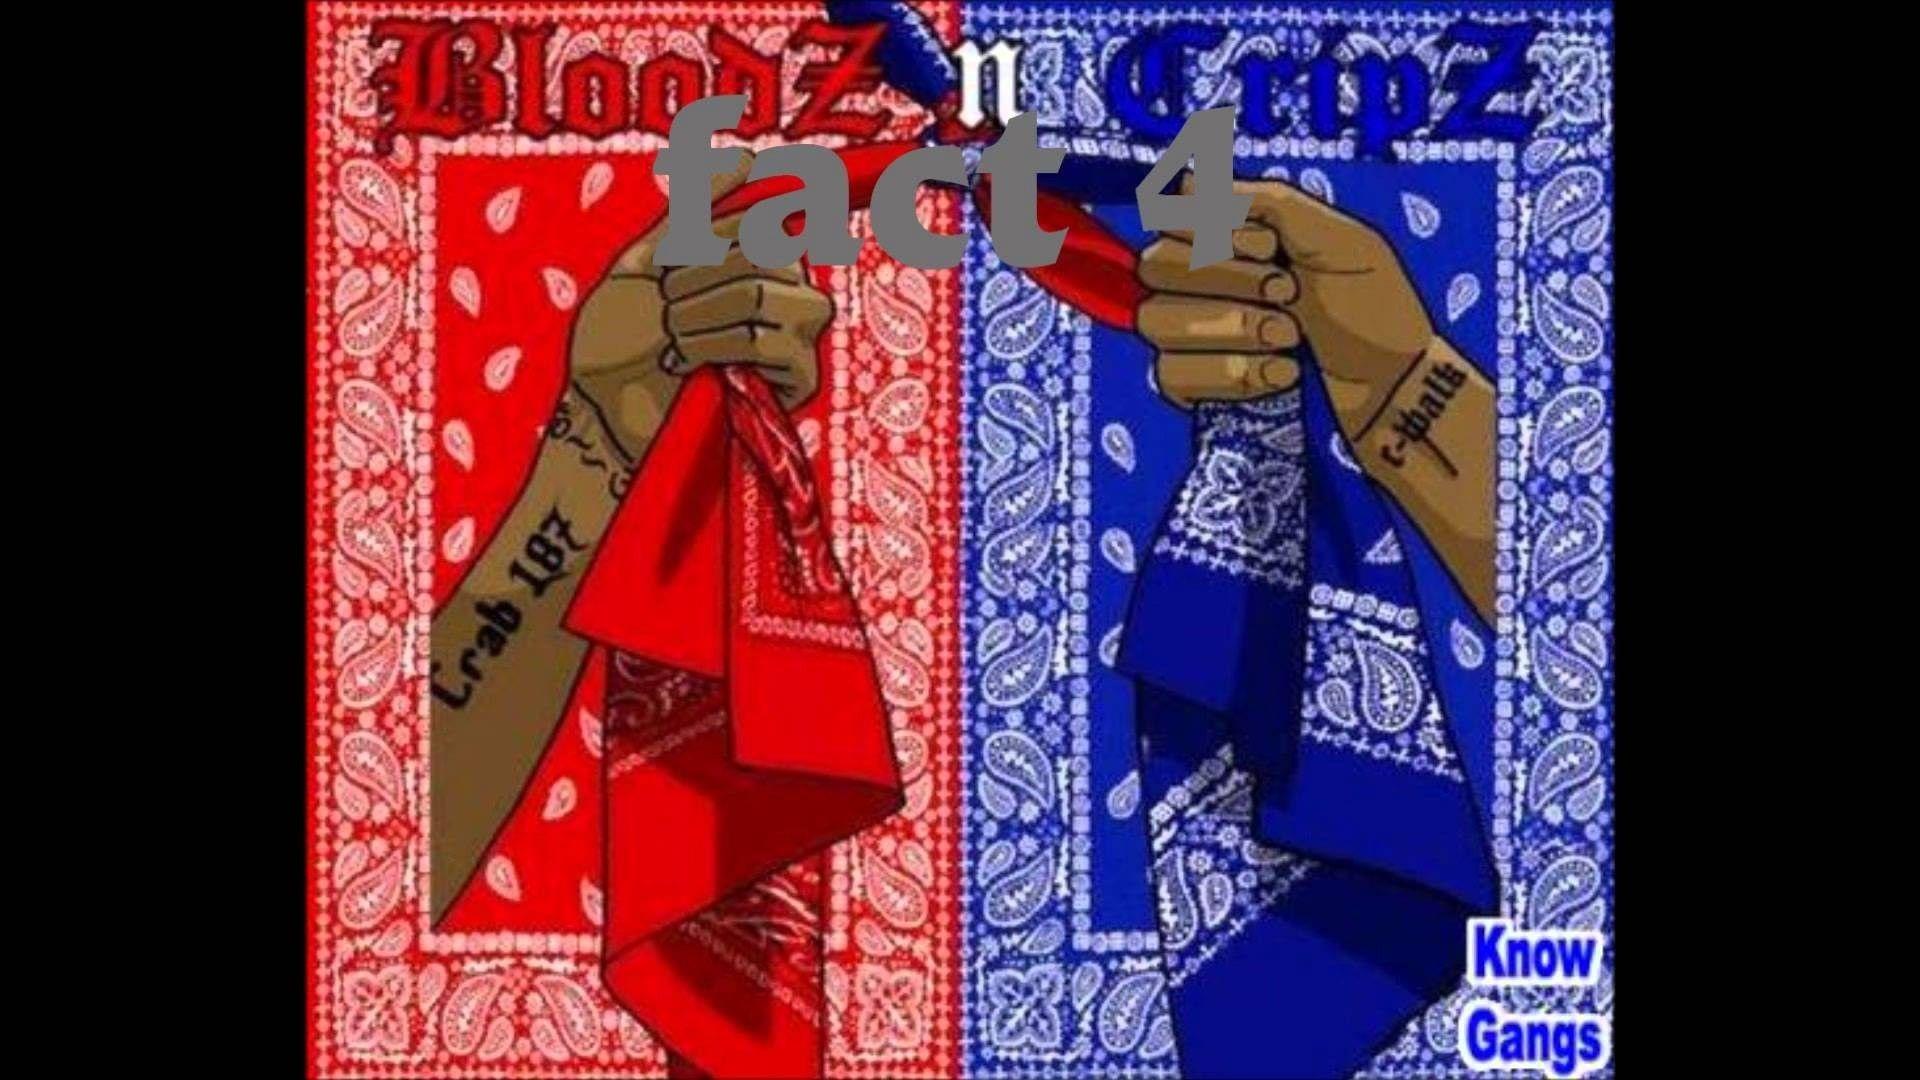 Cripz and Bloodz Wallpaper